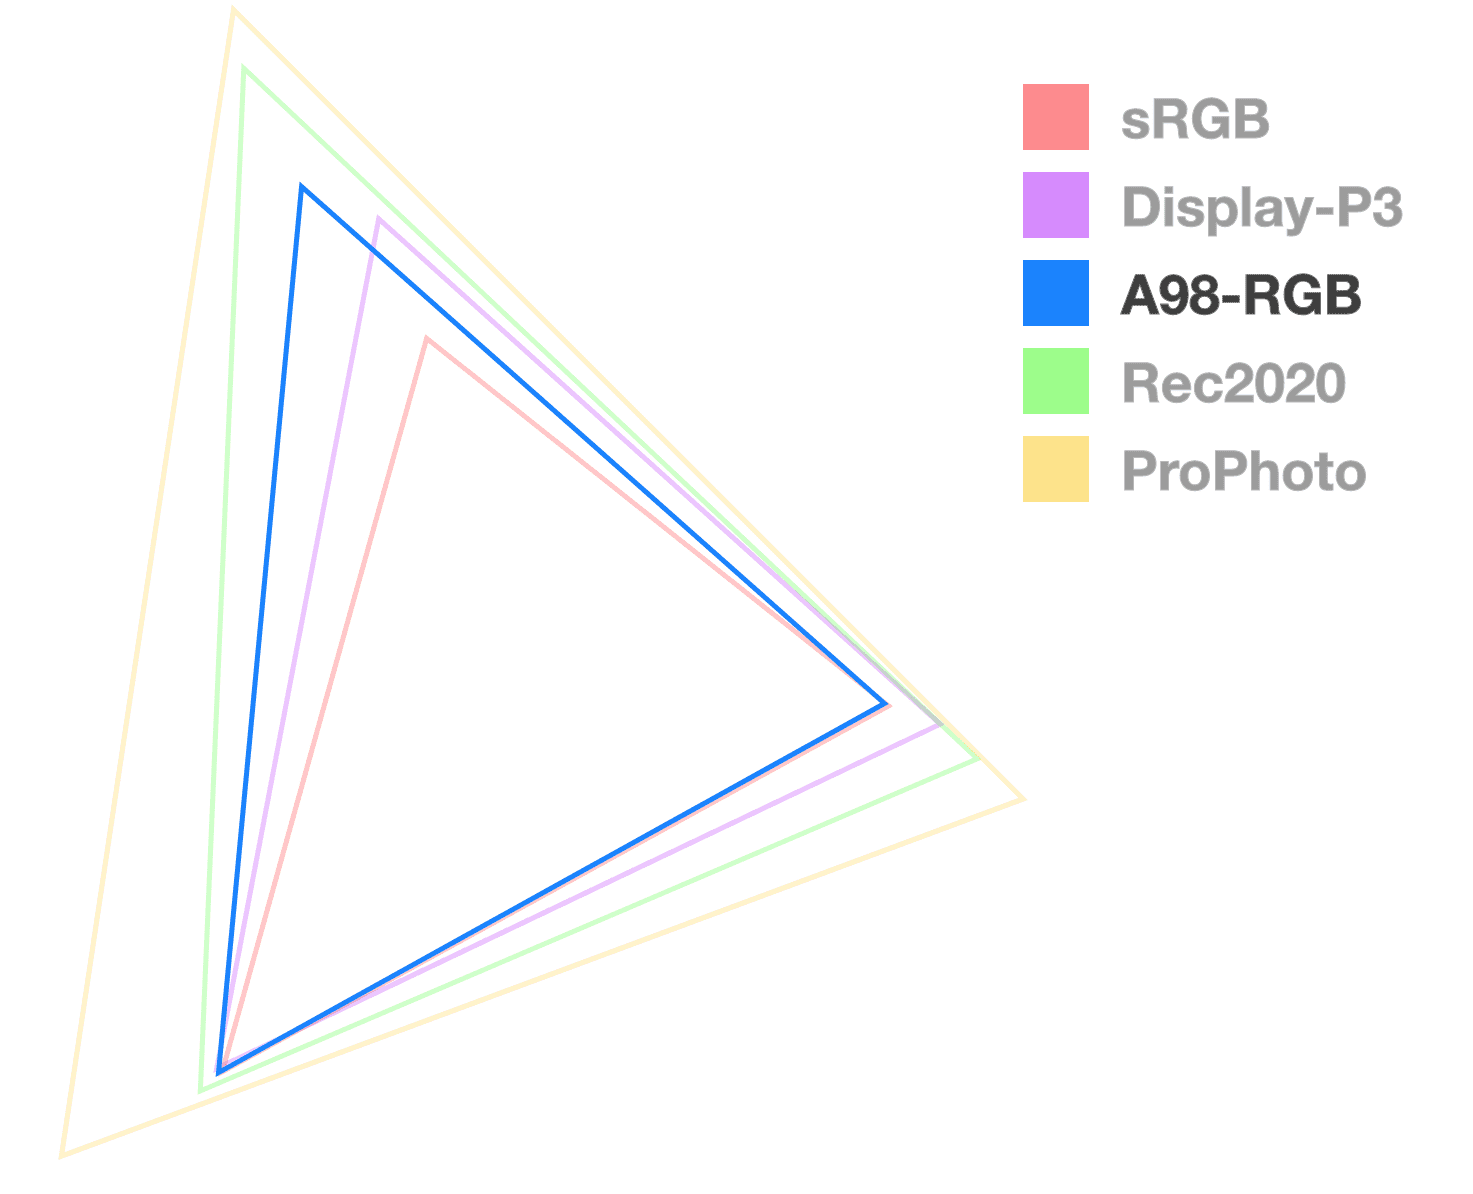 Le triangle A98 est le seul qui soit entièrement opaque. Il permet de visualiser la taille de la gamme. Il ressemble au triangle de taille moyenne.